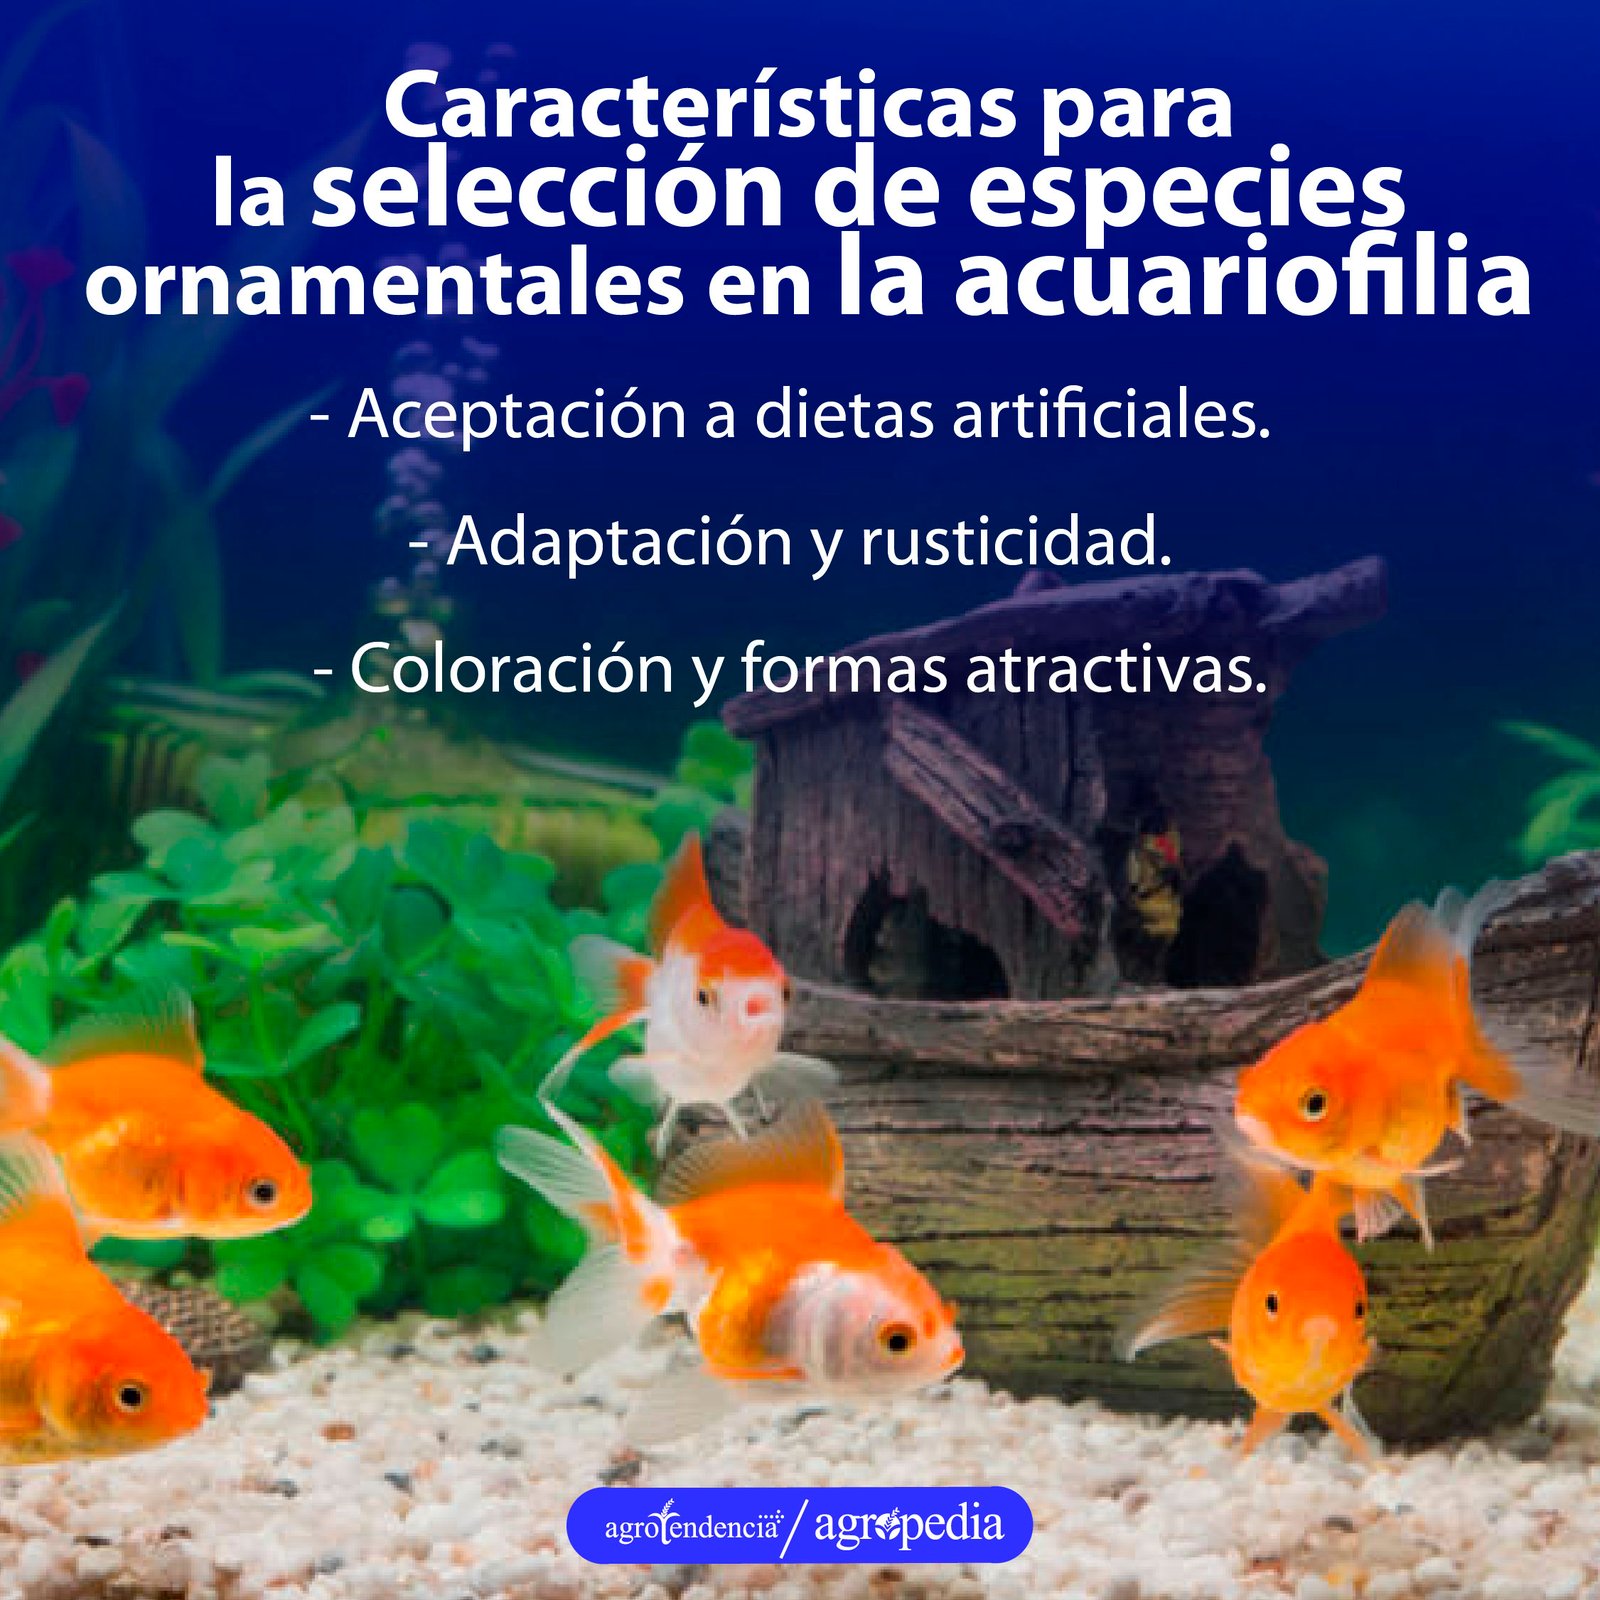 6 peces naranjas dentro de un acuario